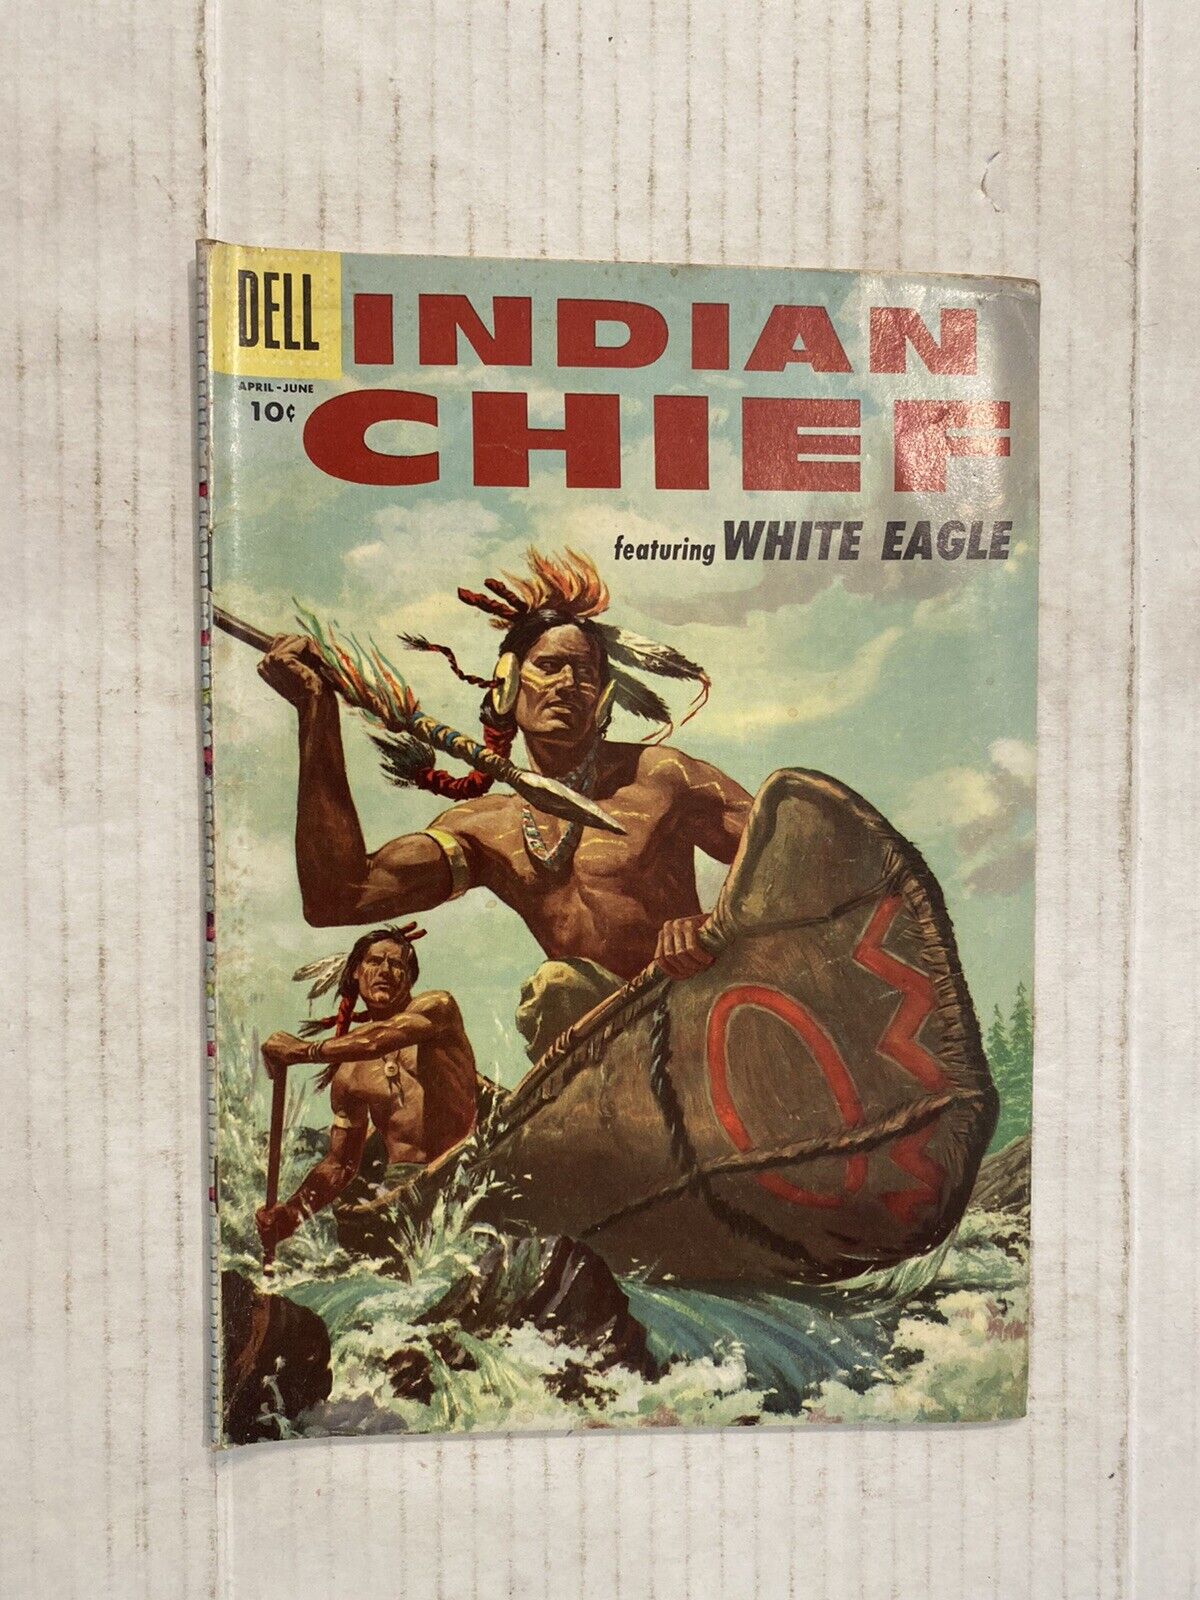 Indian Chief #22 White Eagle 1956 Silver Age Dell Comics